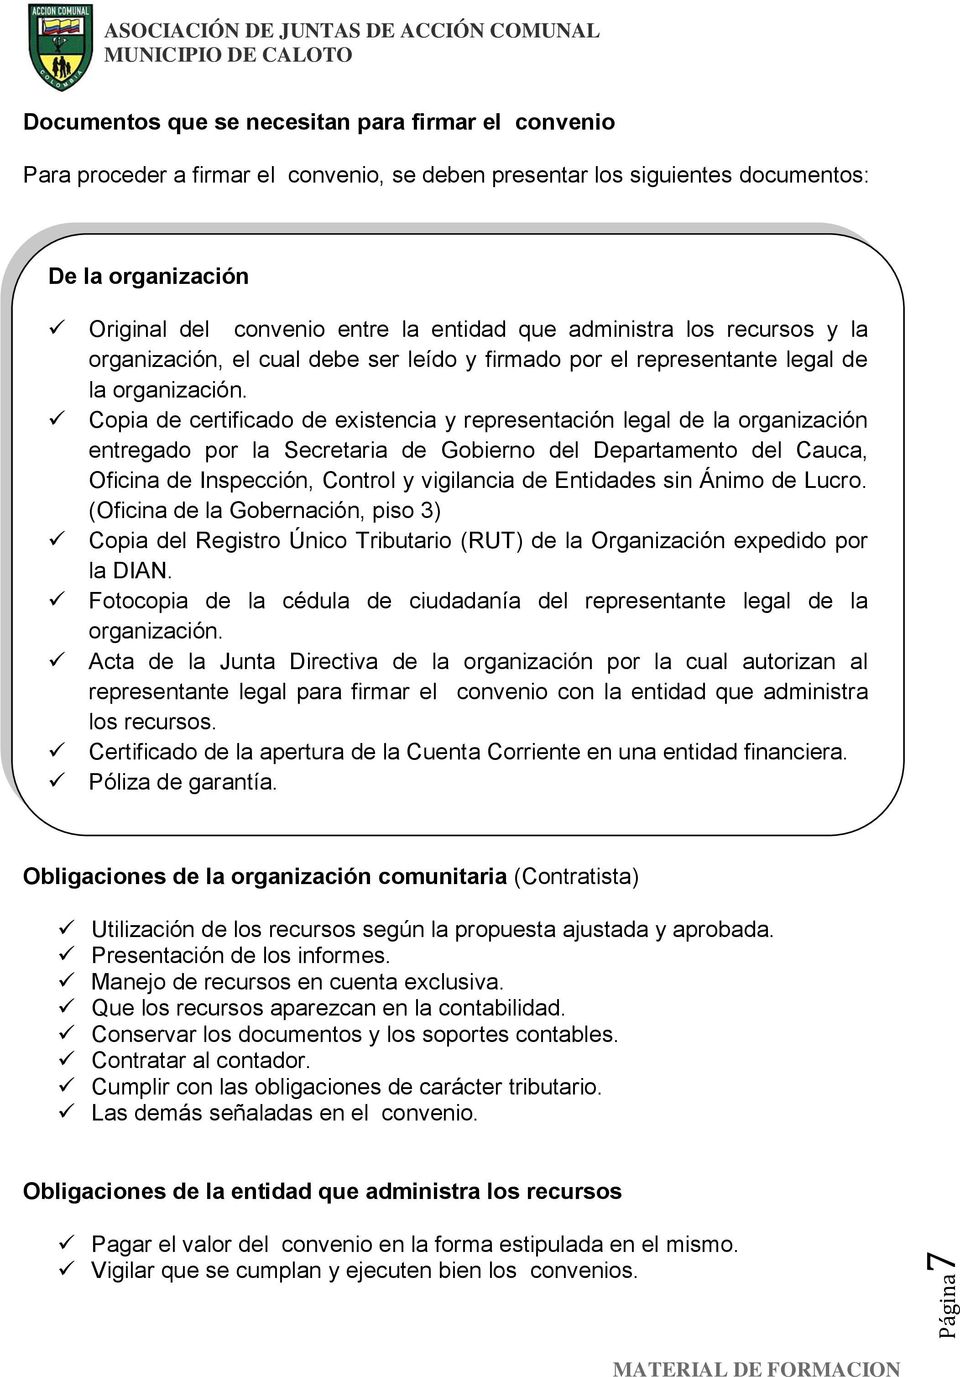 Copia de certificado de existencia y representación legal de la organización entregado por la Secretaria de Gobierno del Departamento del Cauca, Oficina de Inspección, Control y vigilancia de